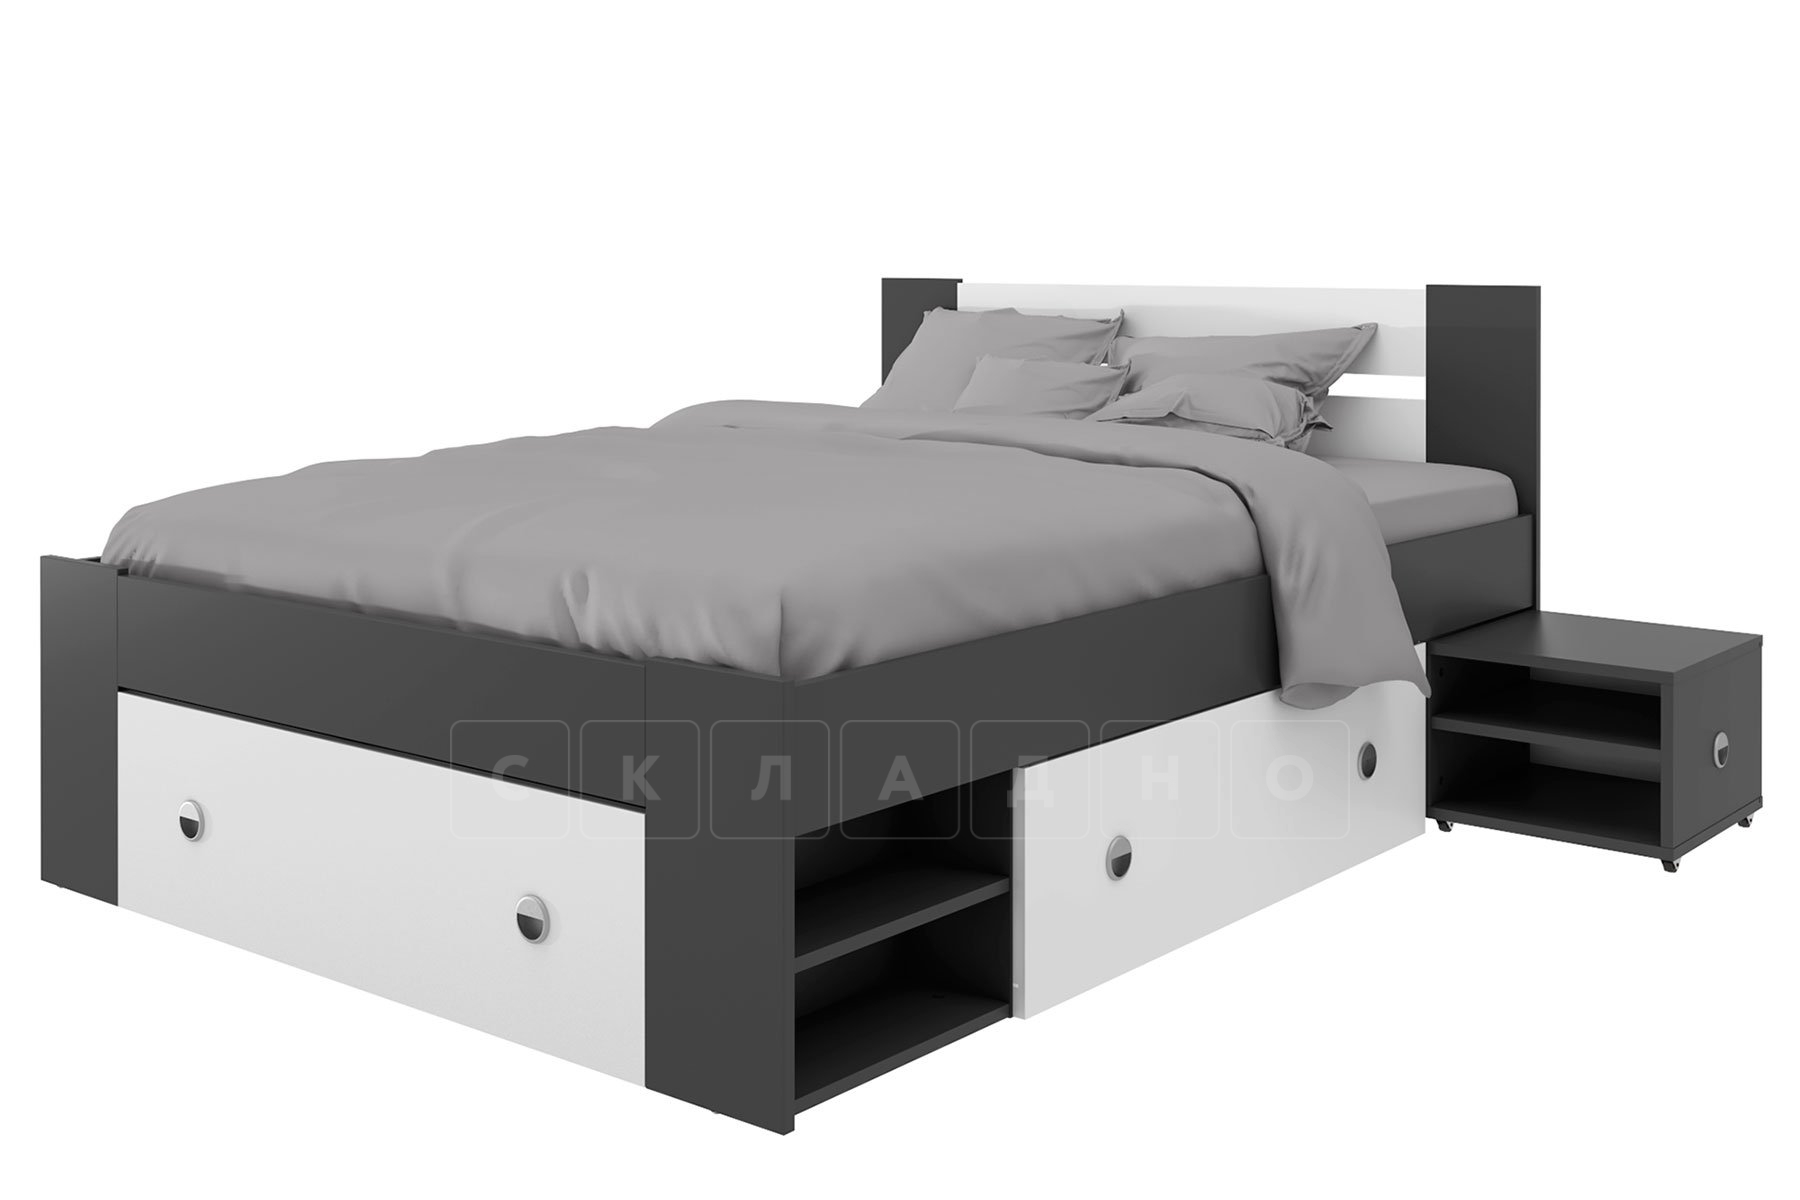 Кровать с ящиками Линда 140 см фото 4 | интернет-магазин Складно